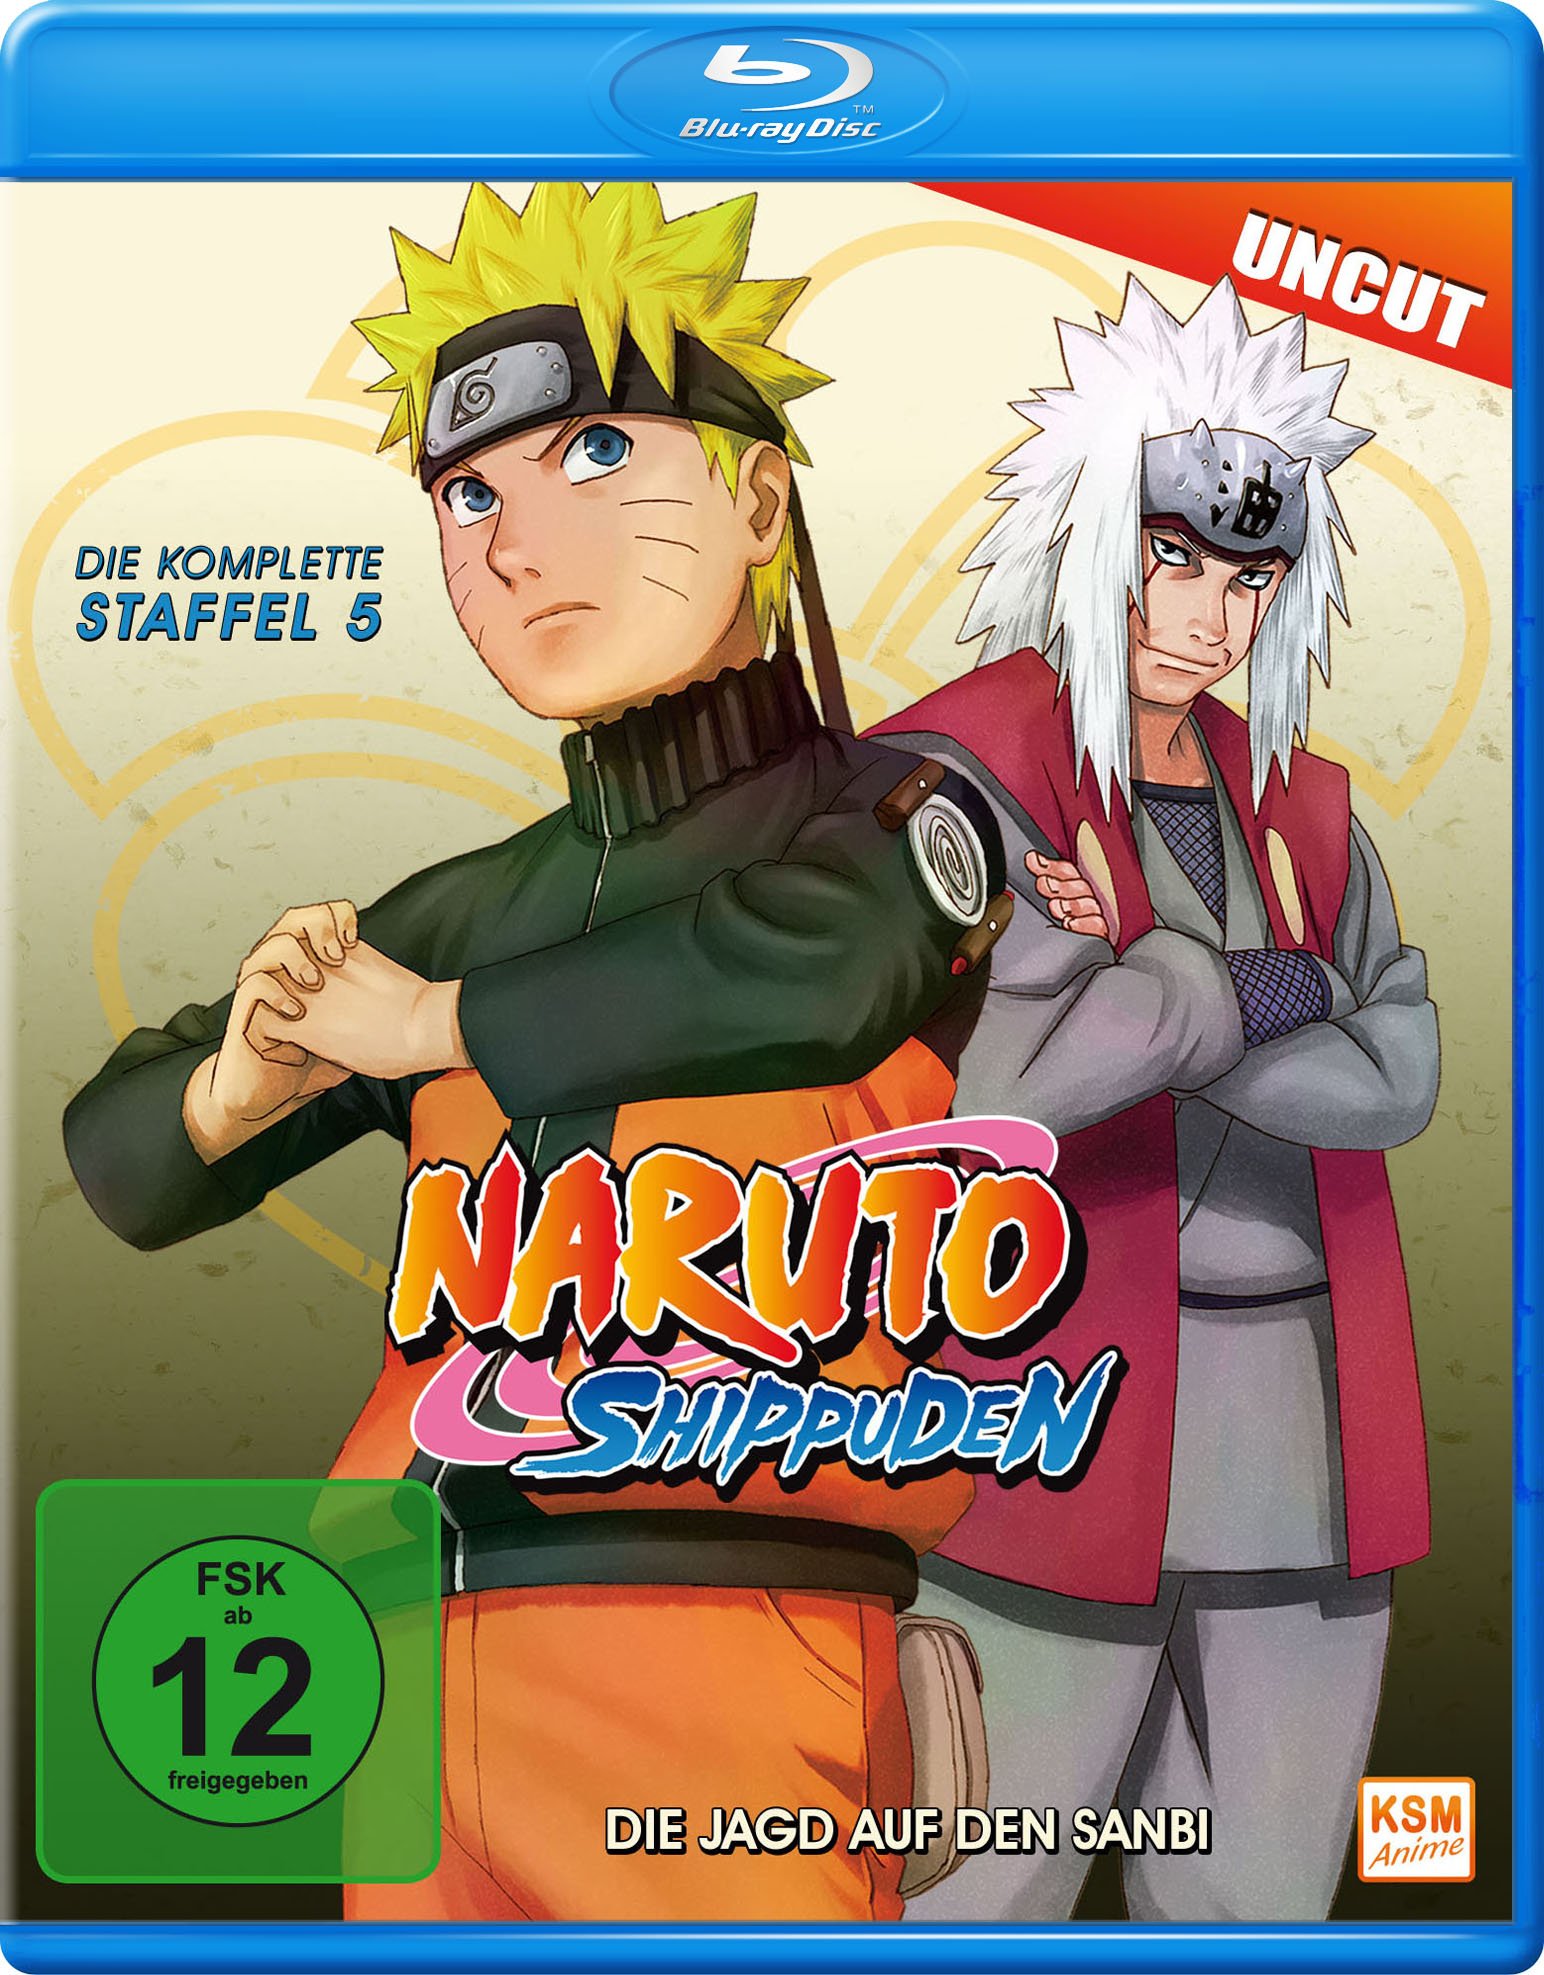 Naruto Shippuden - Staffel 5: Die Jagd auf den Sanbi - Uncut [Blu-ray]